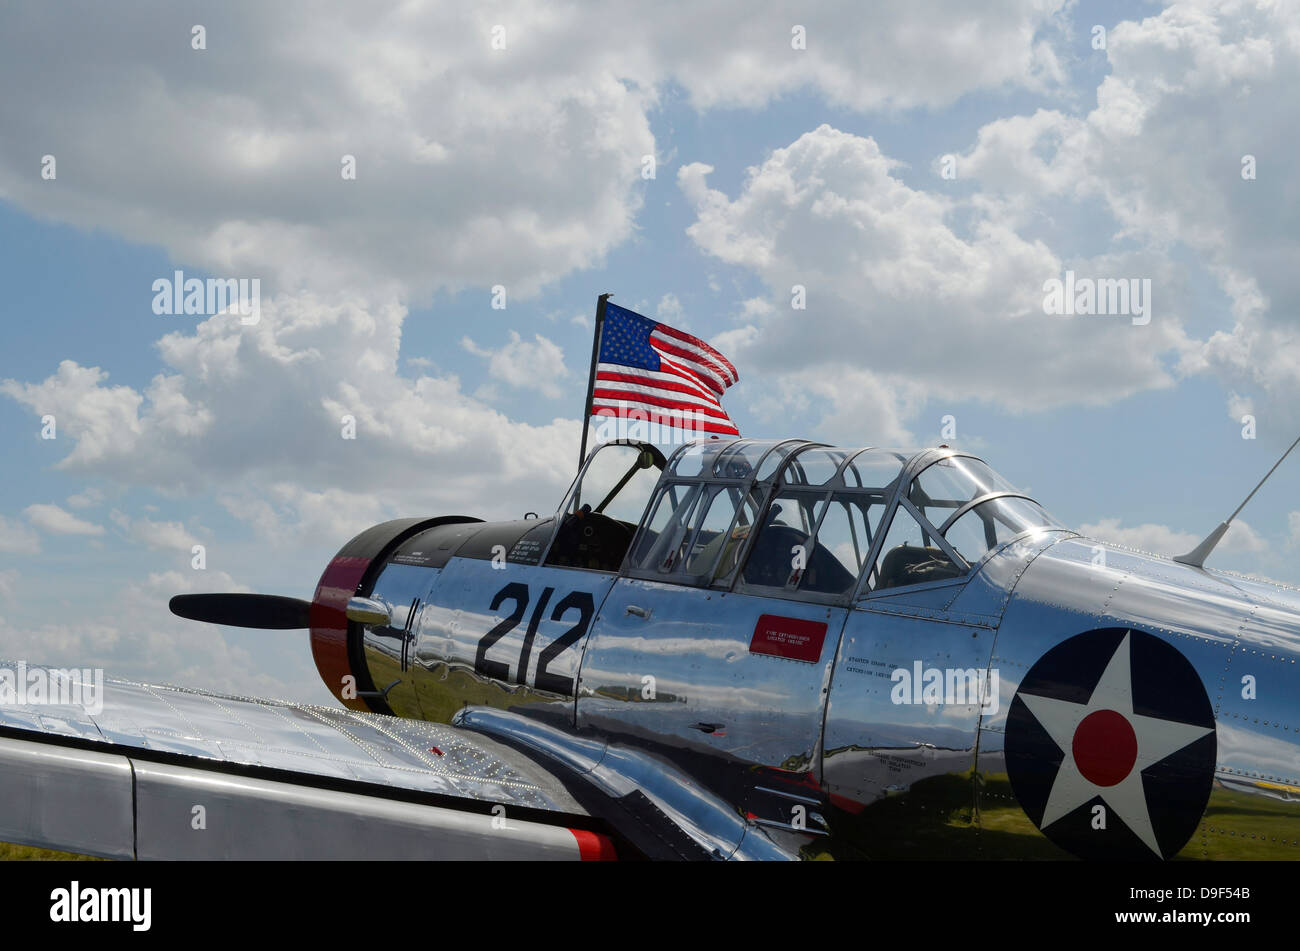 Un avion d'entraînement BT-13 Vaillant avec le drapeau américain. Banque D'Images